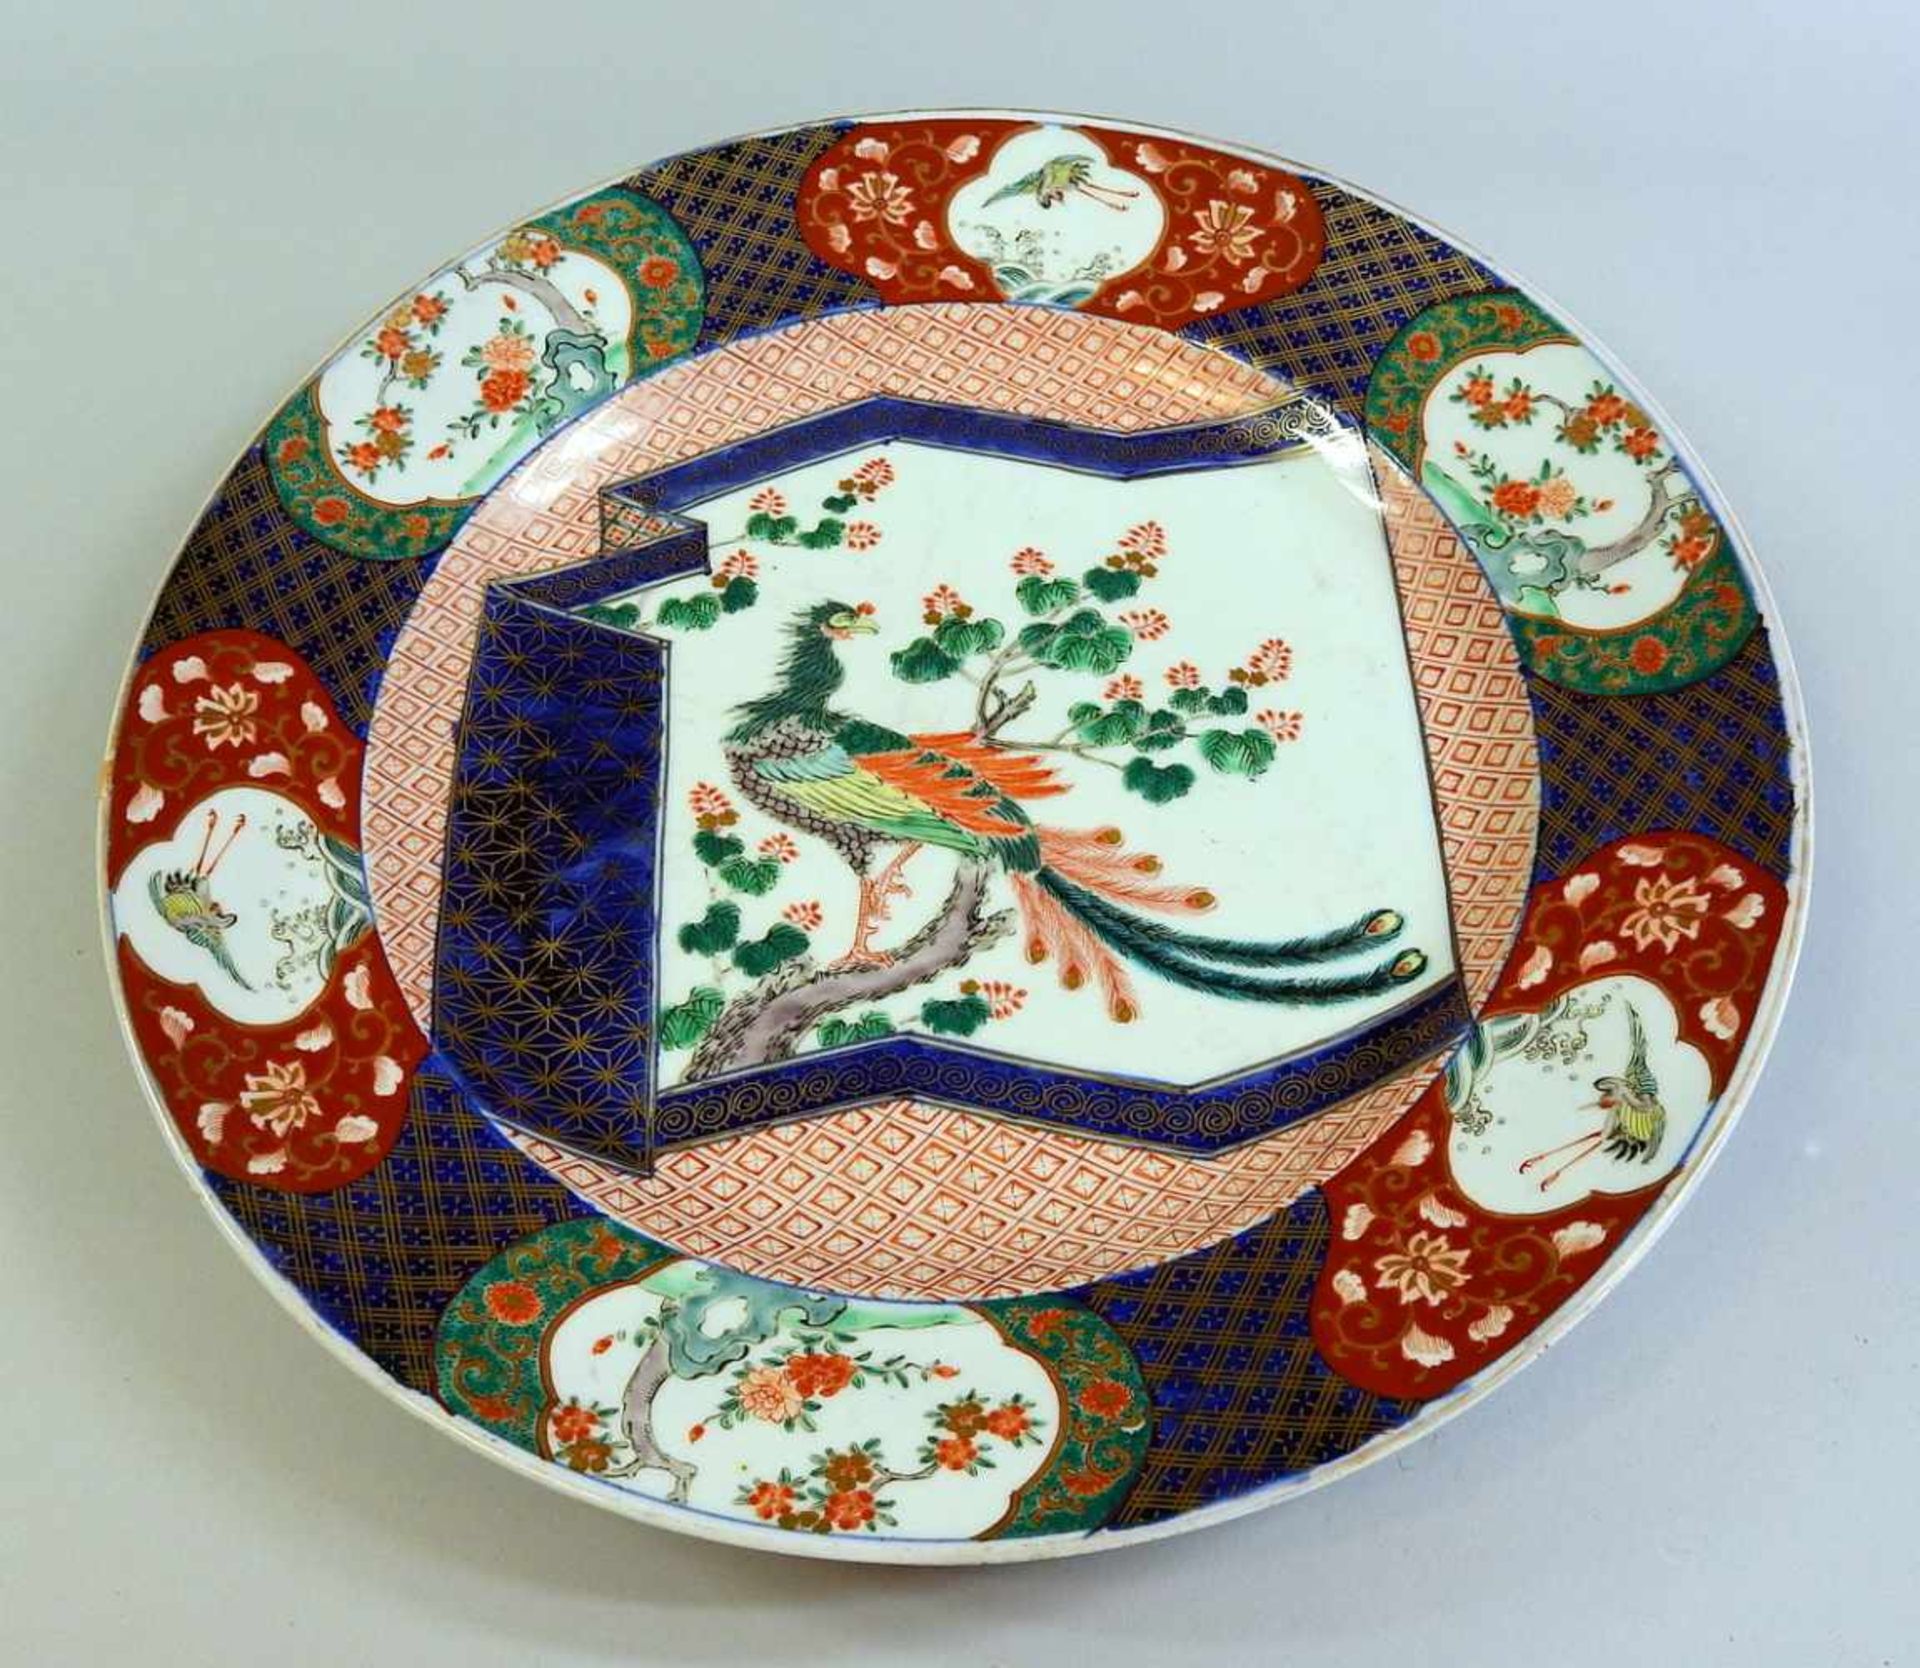 Große Platte Keramik, mit Vogel-Darstellung. Gute Erhaltung. China, um 1860. Ø ca. 40,5 cm